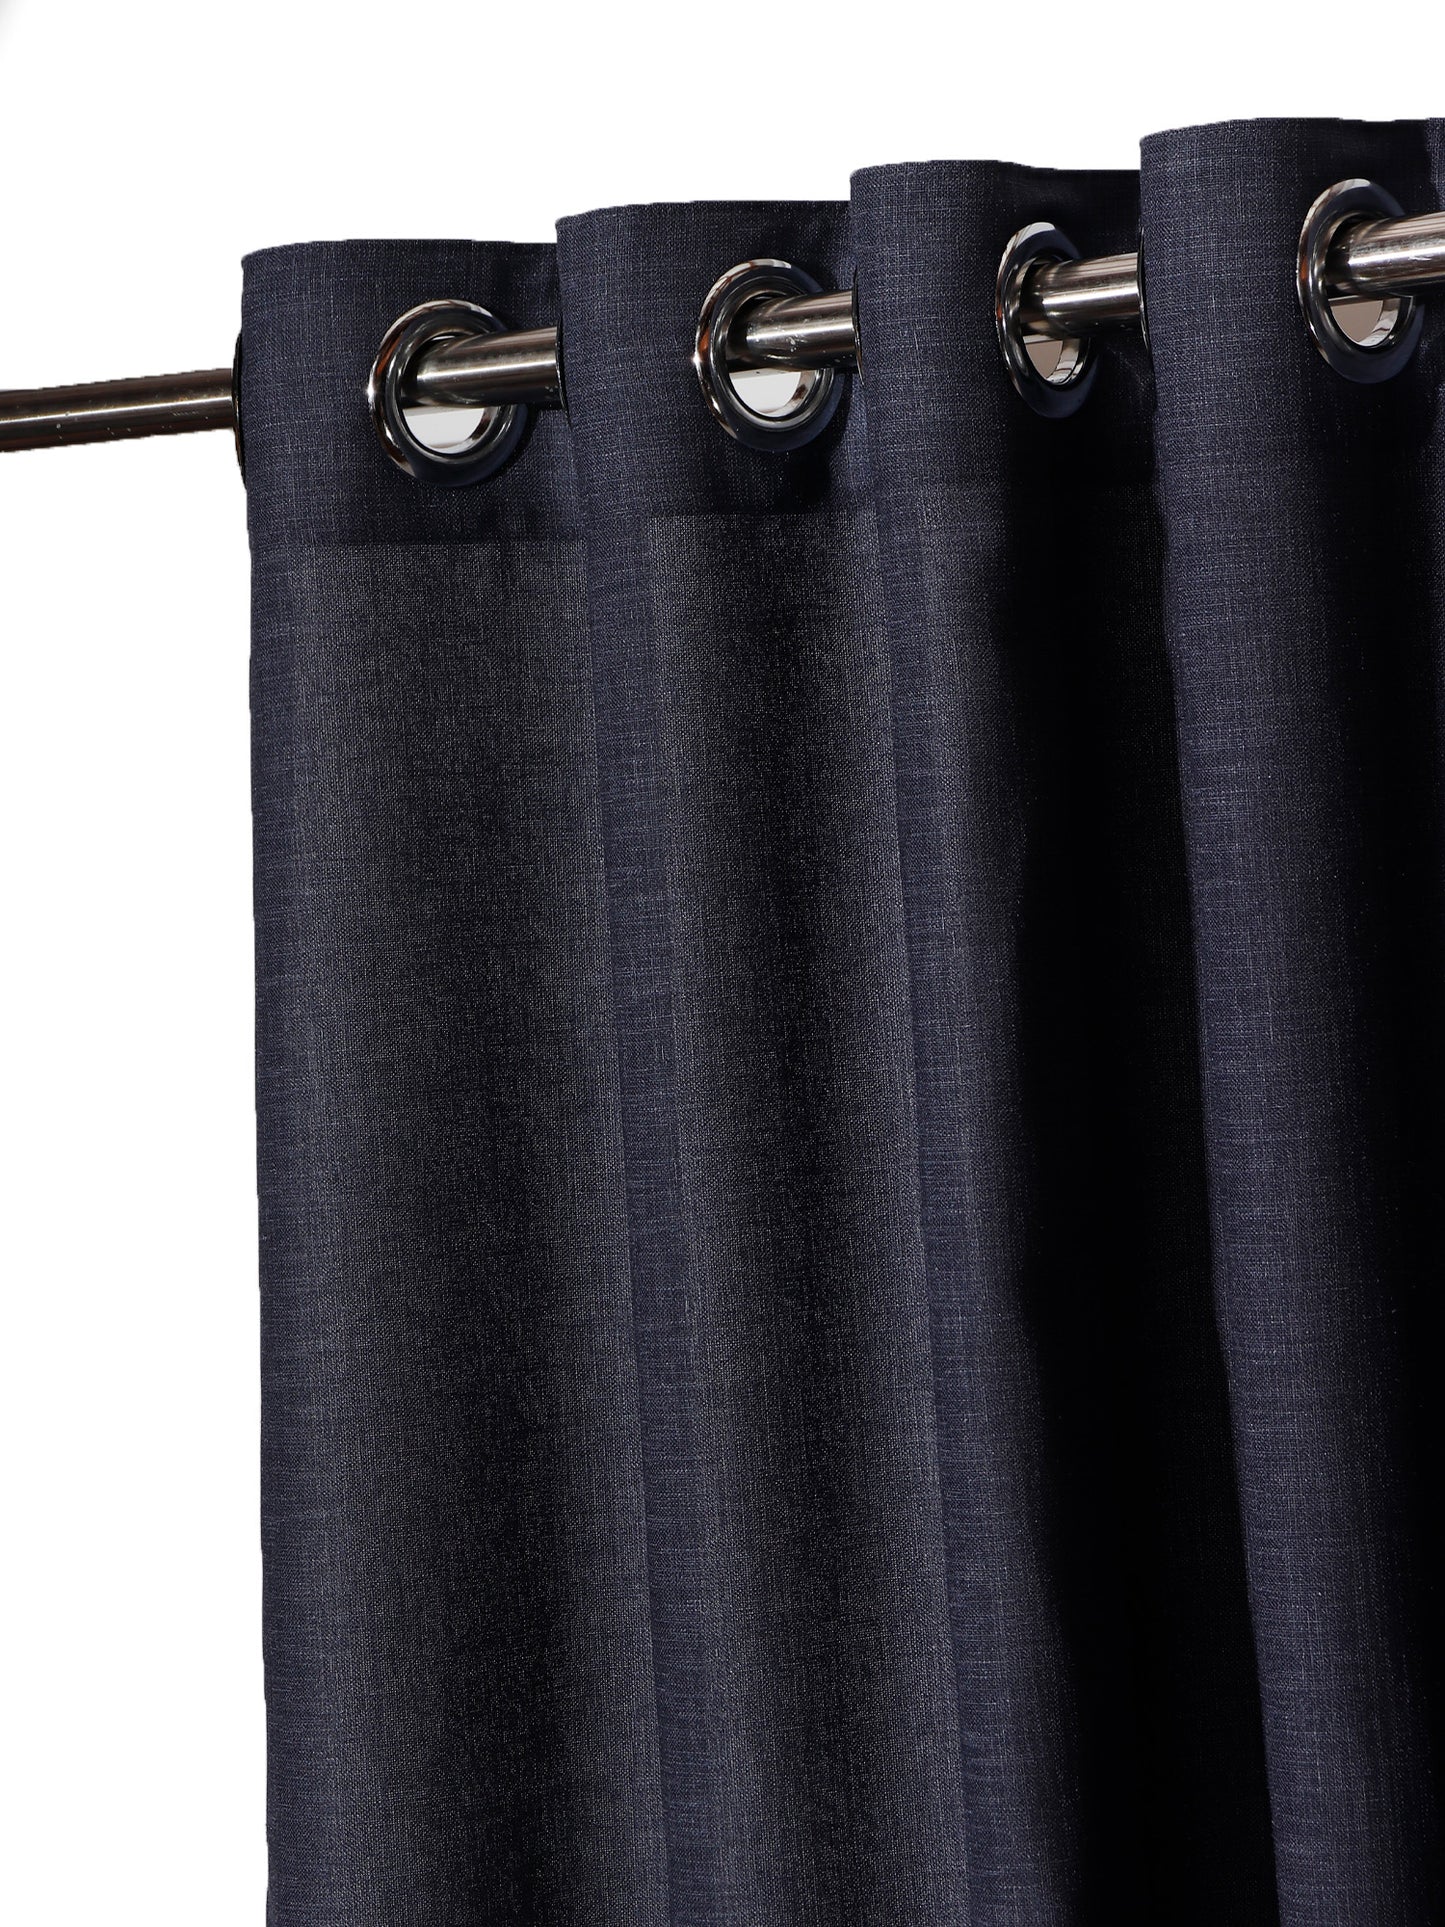 Window Curtain Polyester Blend Basket Weave Dark Blue - 50" X 60"